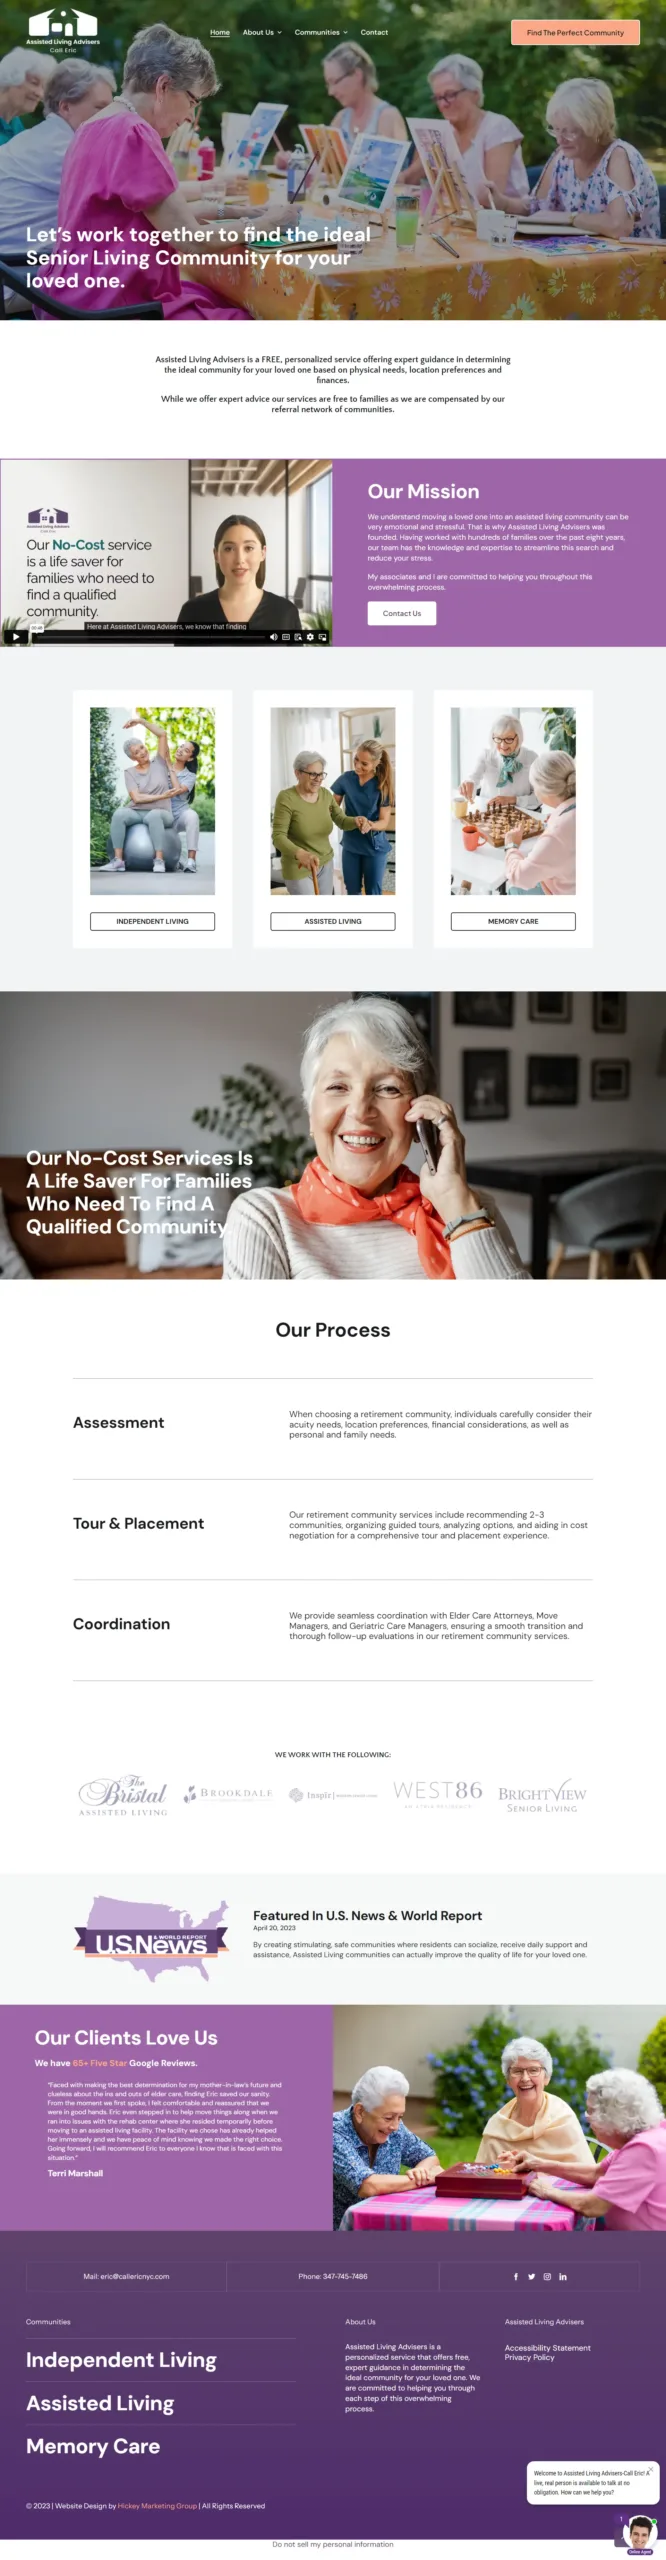 Website Design Services Prescott - Hickey Marketing Group Portfolio - Assisted Living Advisers